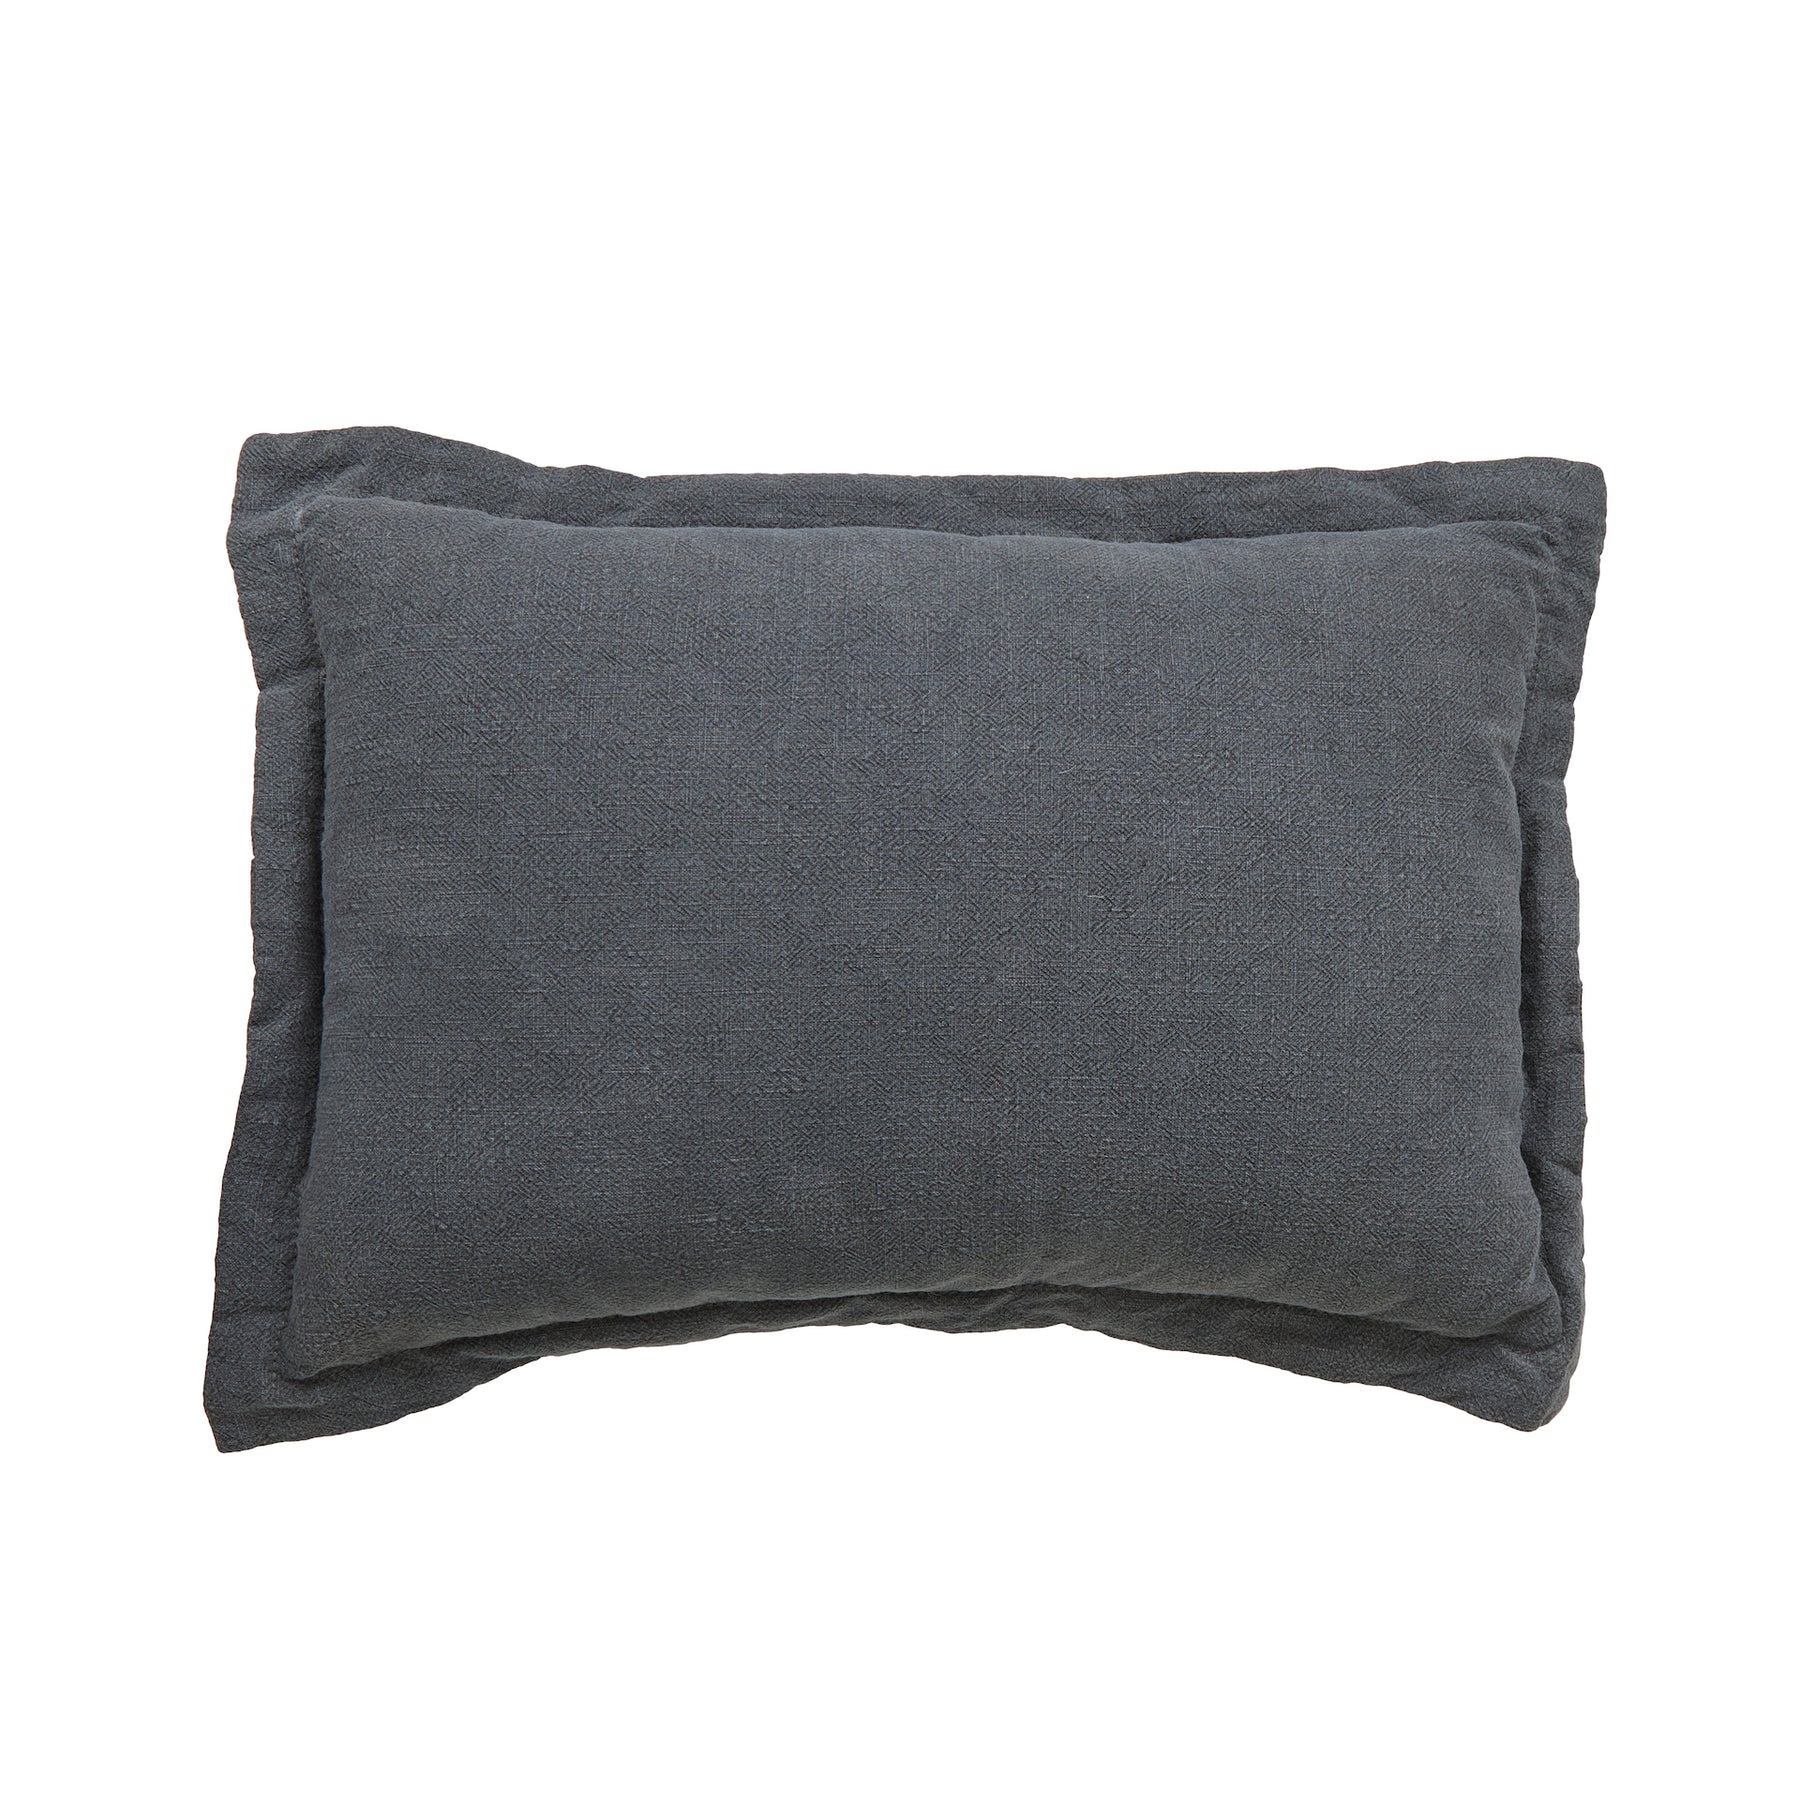 Cove Linen Cushions